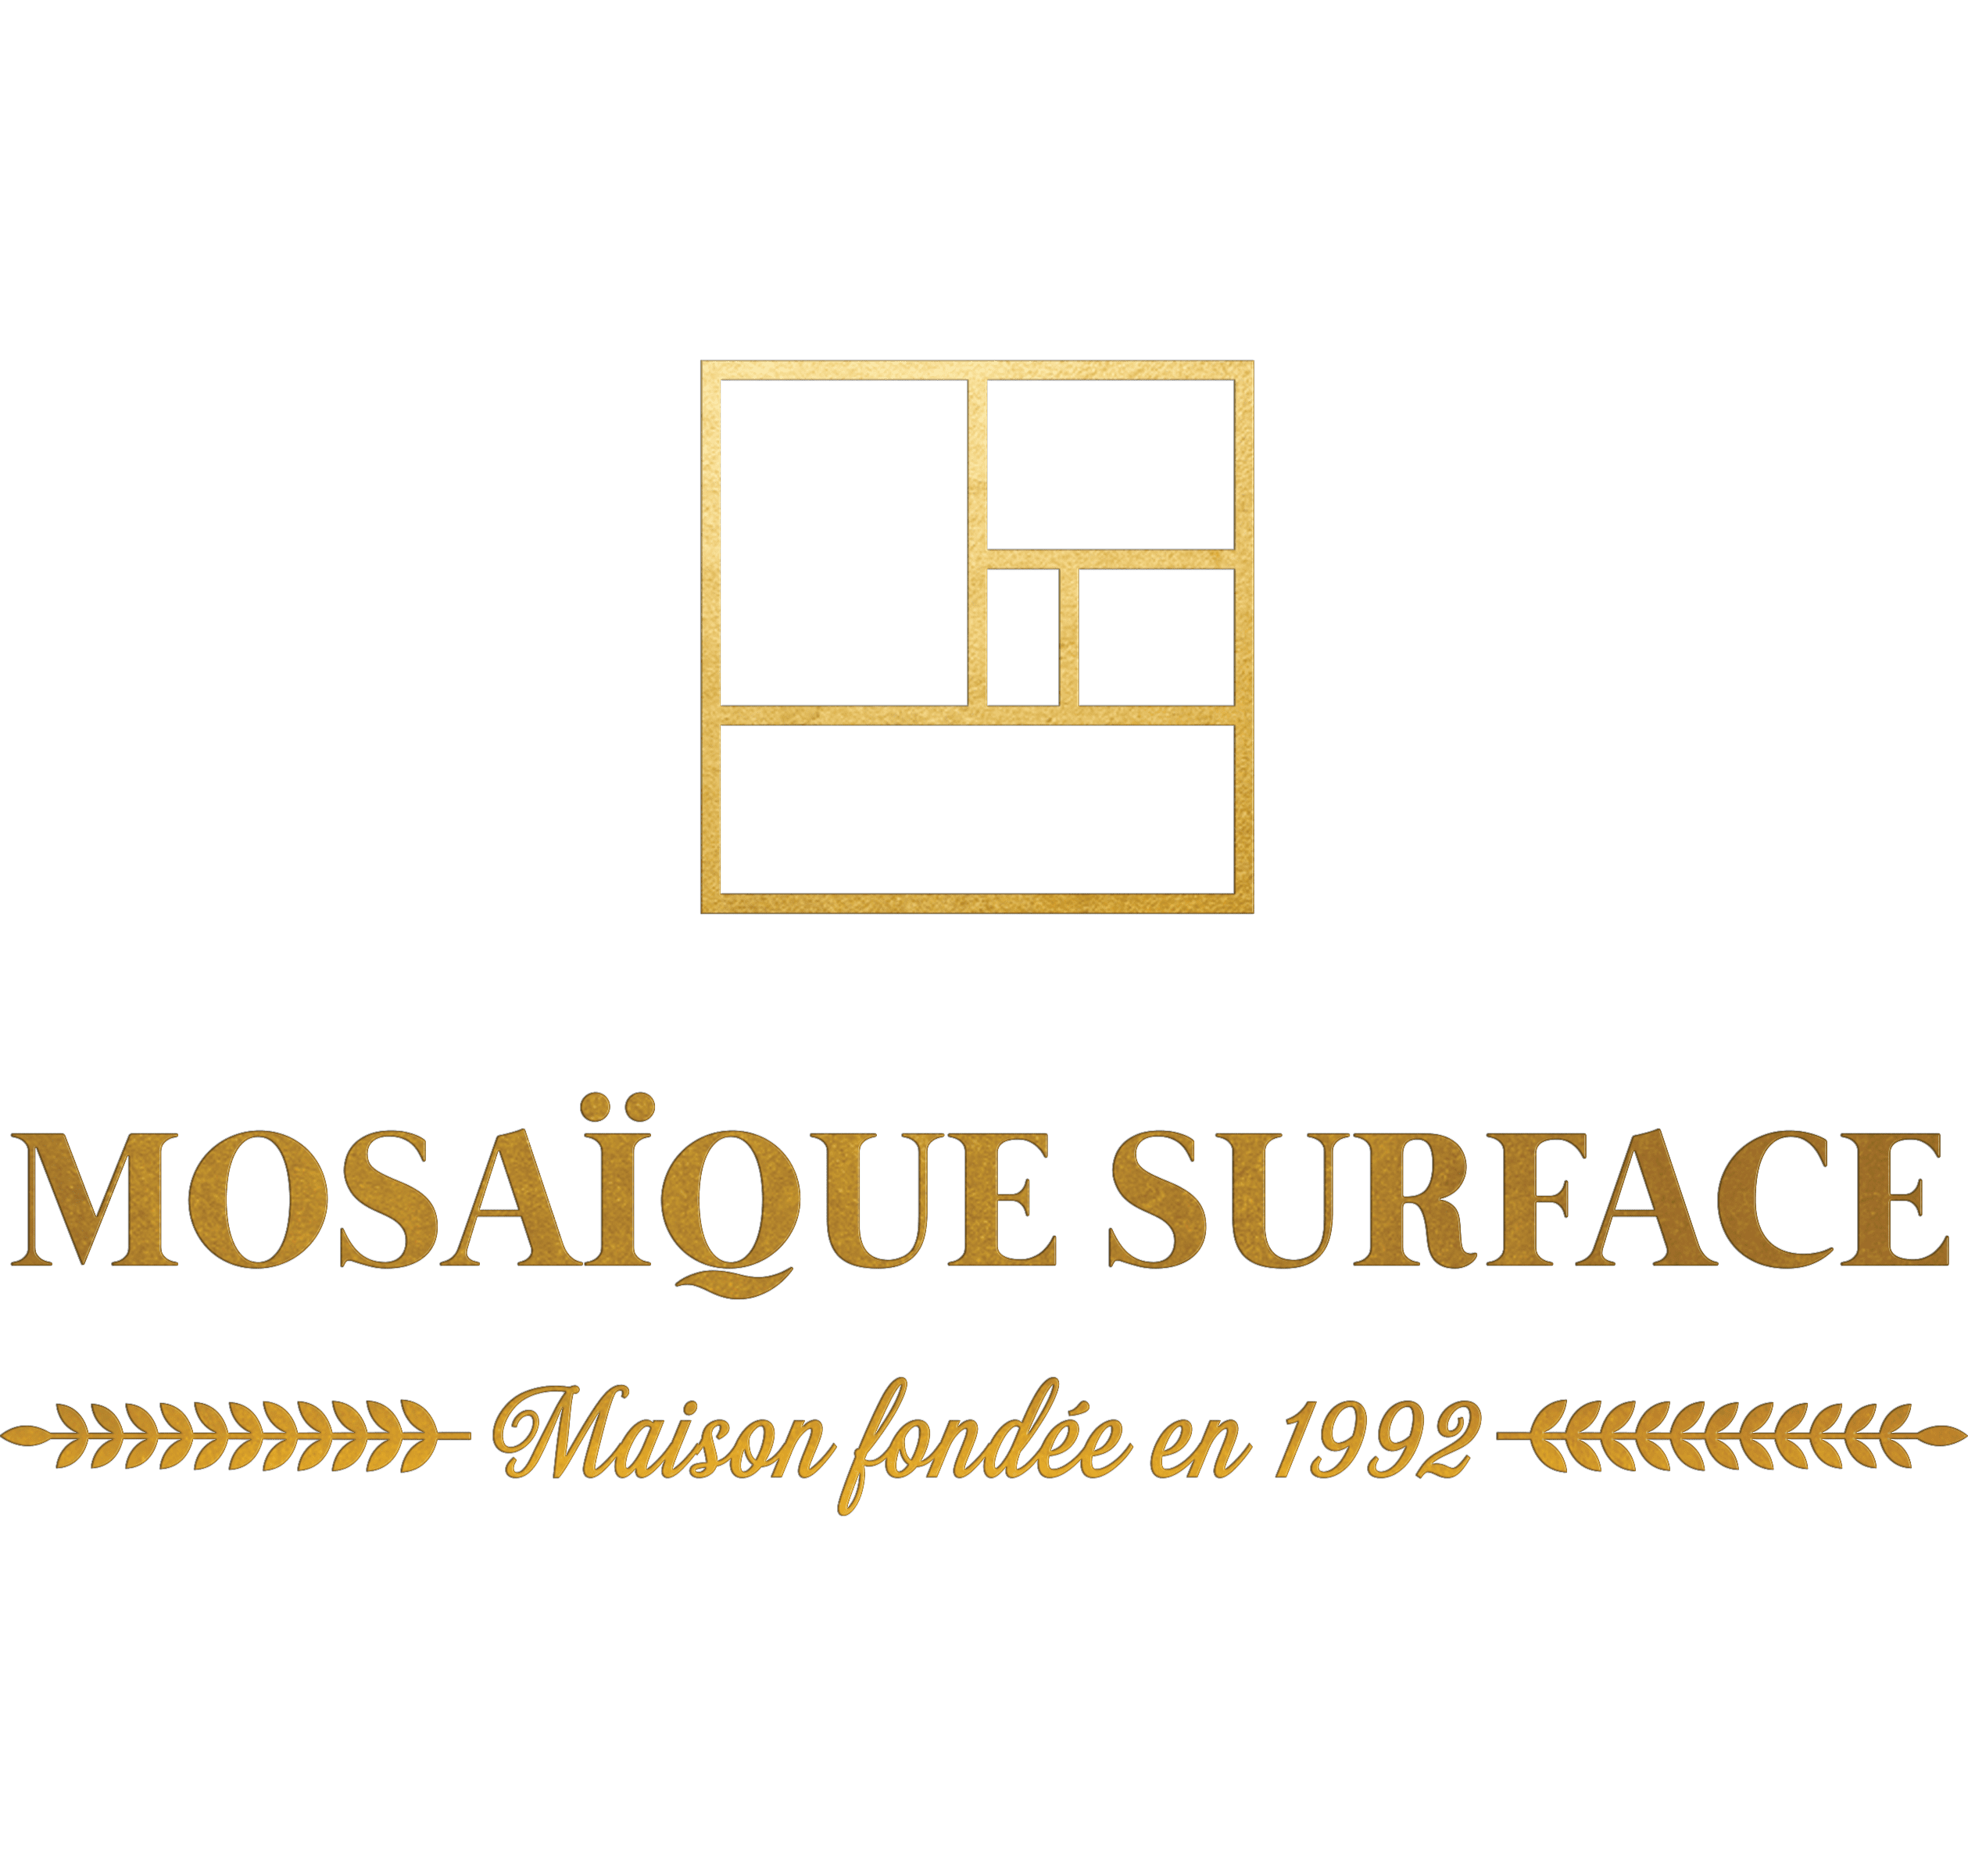 MOSAIQUE SURFACE